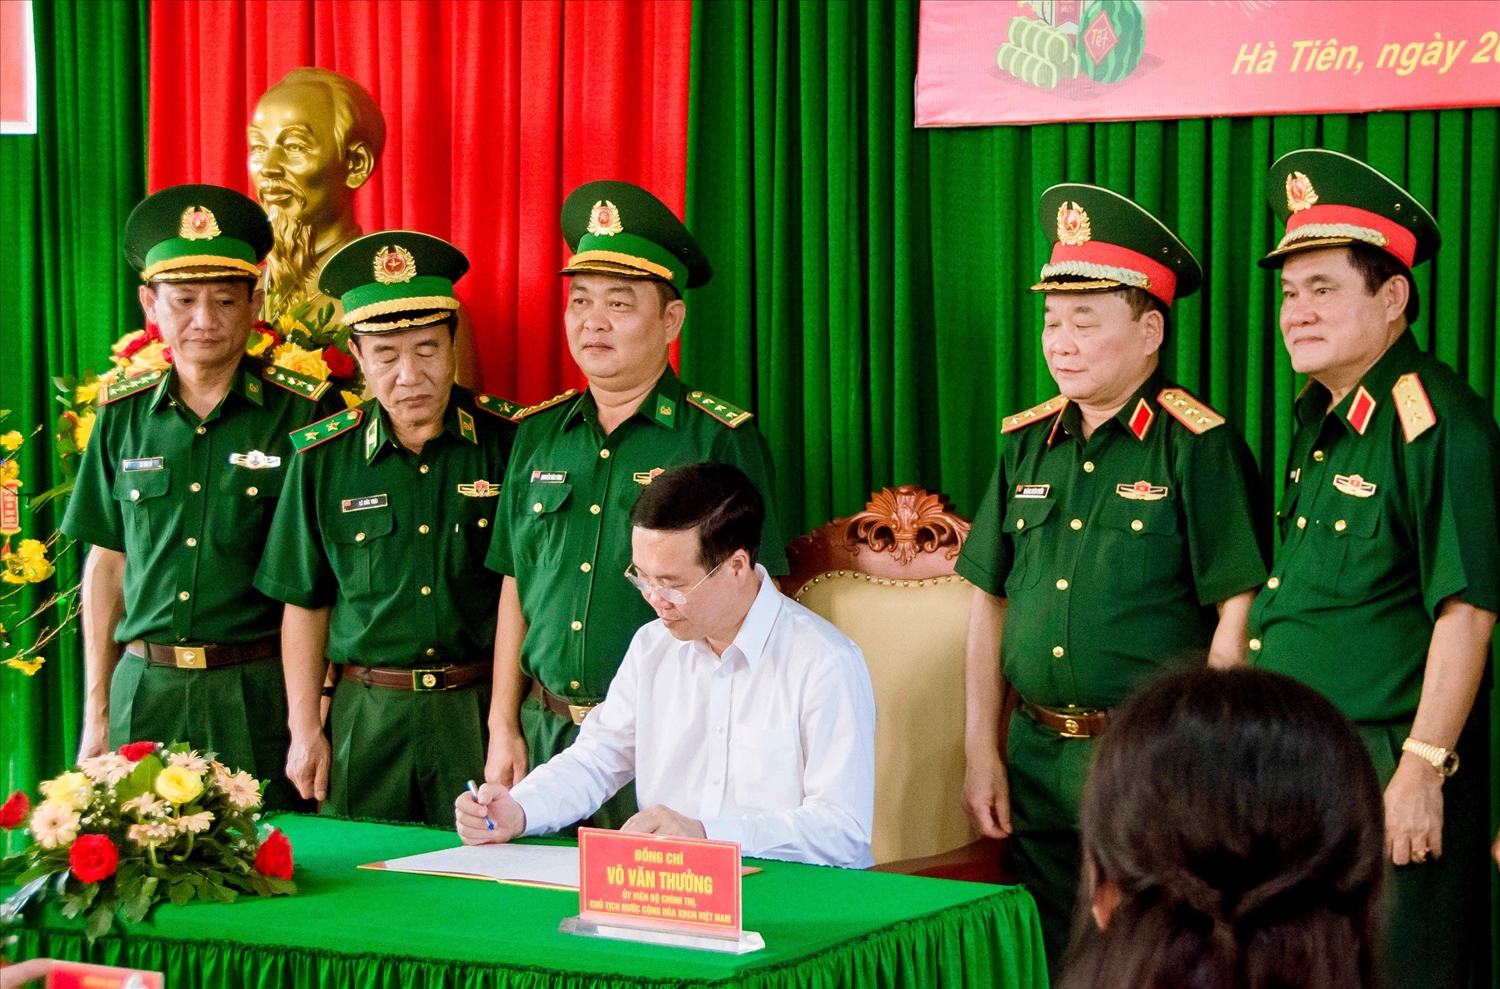 Chủ tịch nước Võ Văn Thưởng ghi sổ vàng lưu niệm Đồn Biên phòng cửa khẩu Quốc tế Hà Tiên.